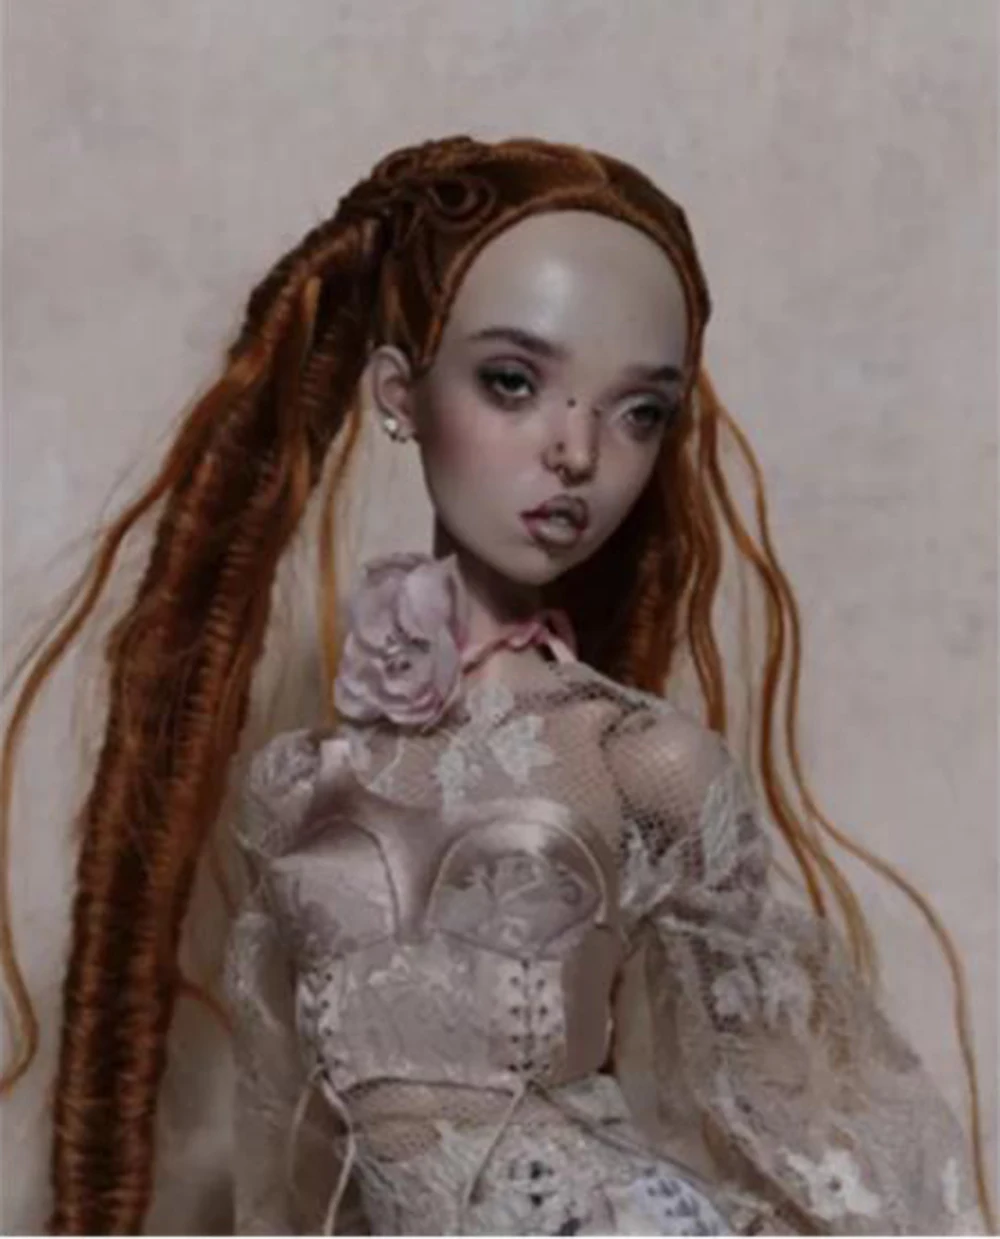 Кукла BJD 1/4 popovie sisters Подарок На день рождения, Высококачественные Шарнирные кукольные Игрушки, подарочная Модель Dolly, коллекция обнаженной Натуры, Художественная Модель Изображение 0